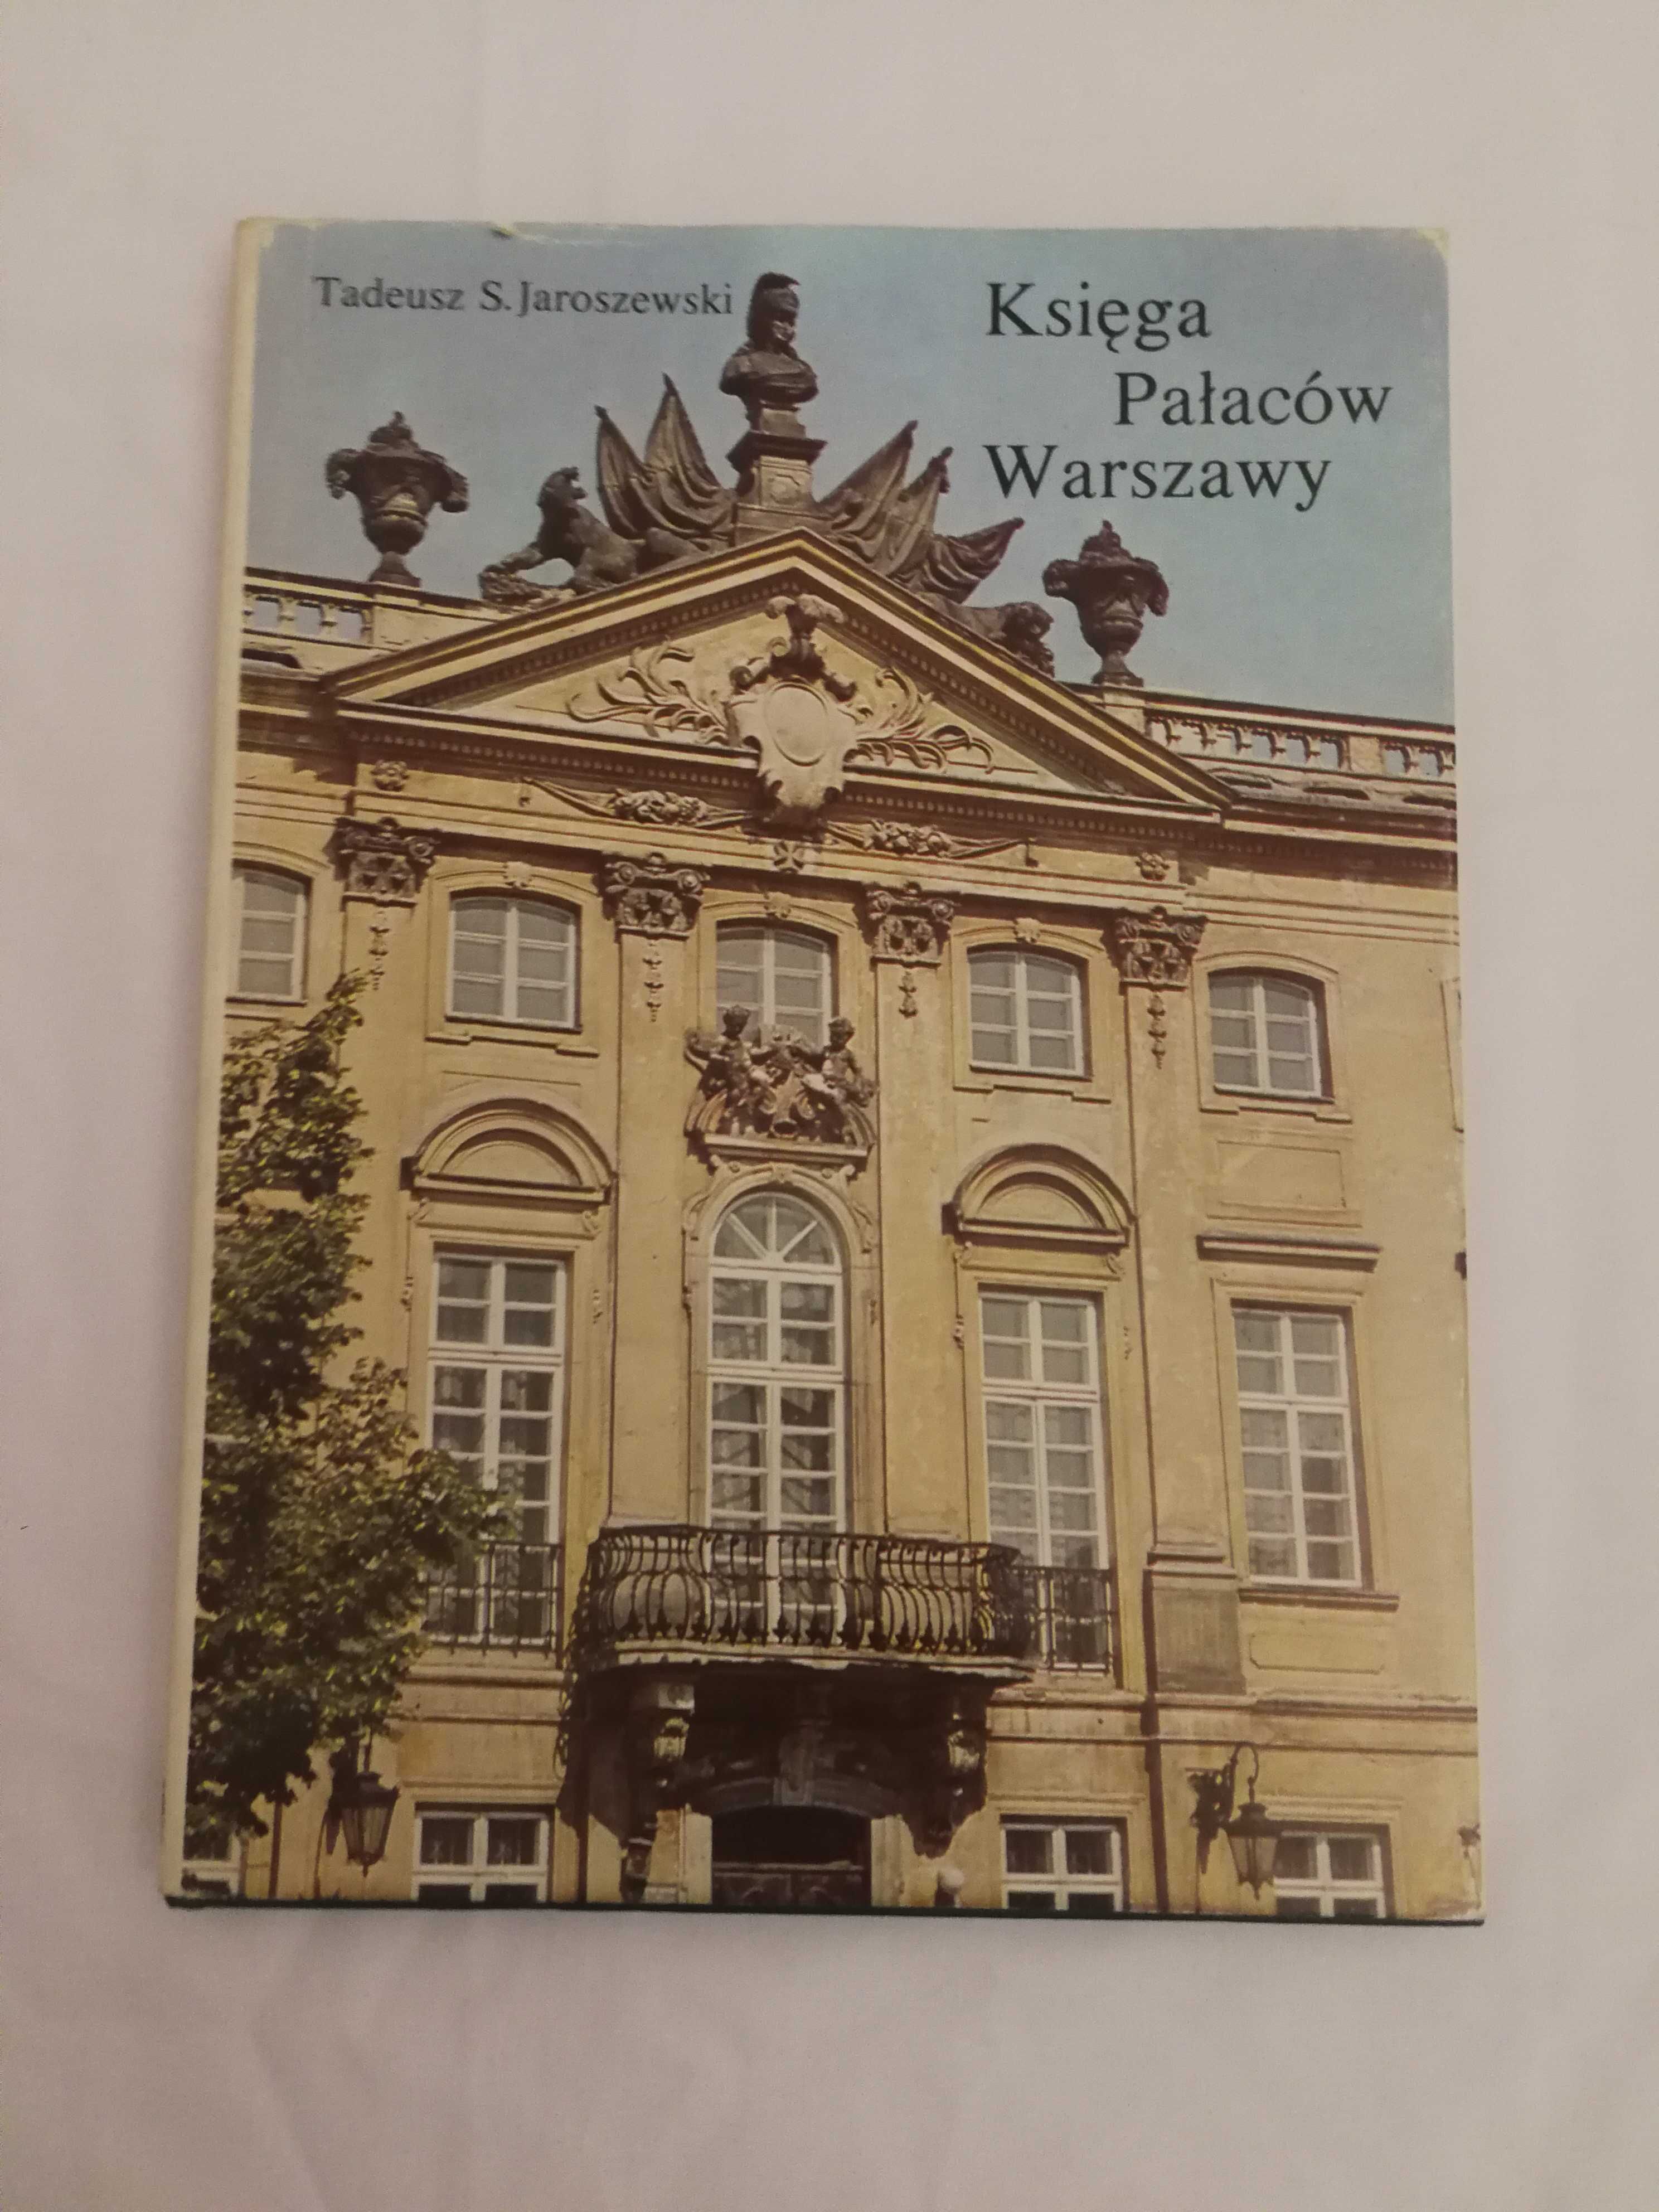 Księga pałaców Warszawy. T. S. Jaroszewski.